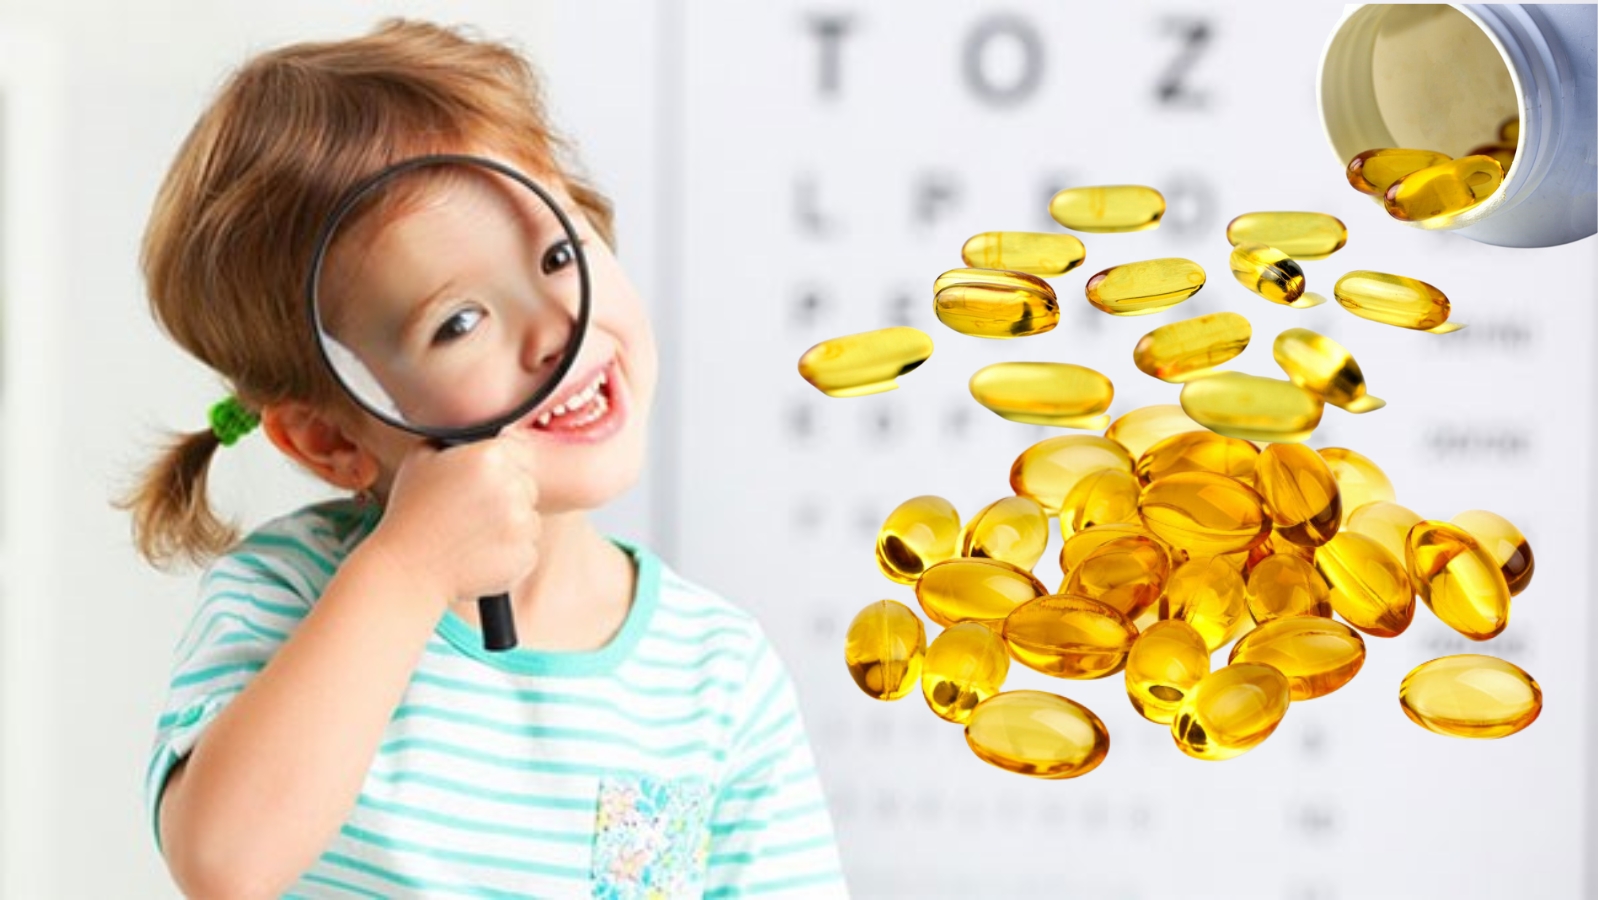 Thuốc té đôi mắt nâng cao thị giác và giải quyết và xử lý những tình hình bệnh lý về mắt